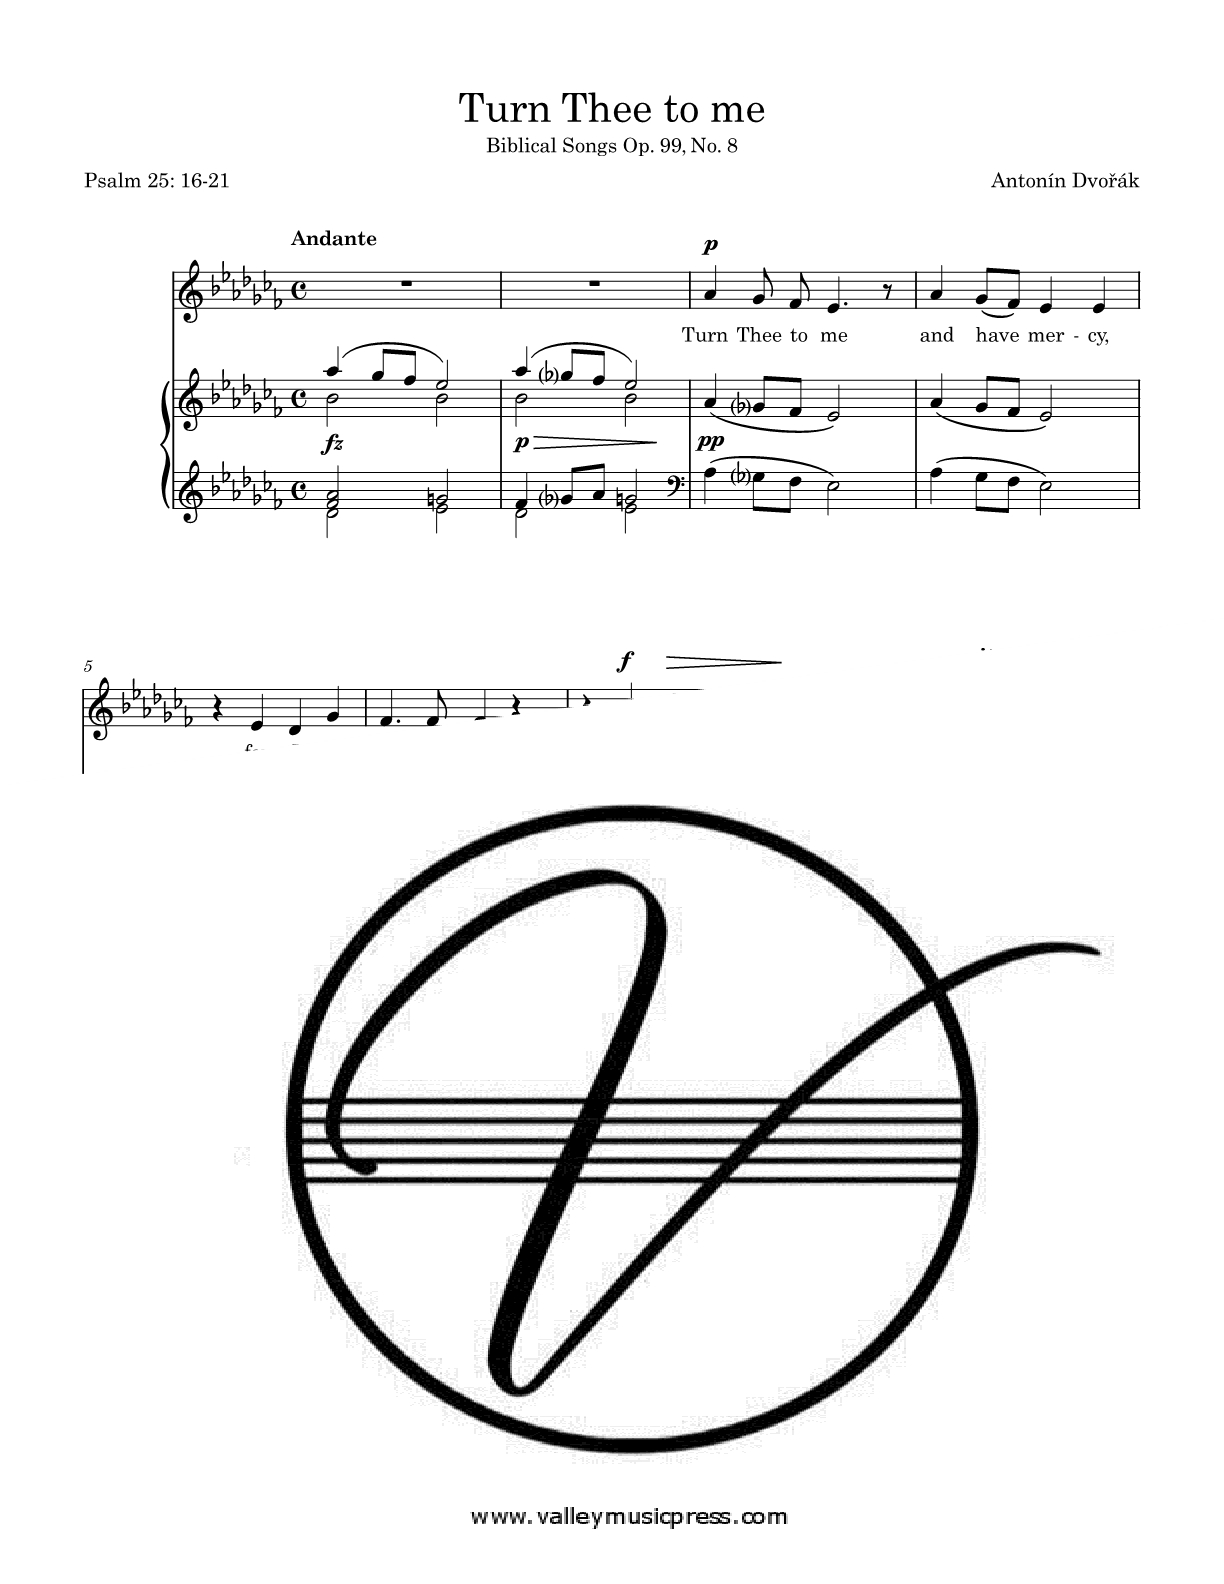 Dvorak - Turn Thee to me Op. 99 No. 8 (Voice)